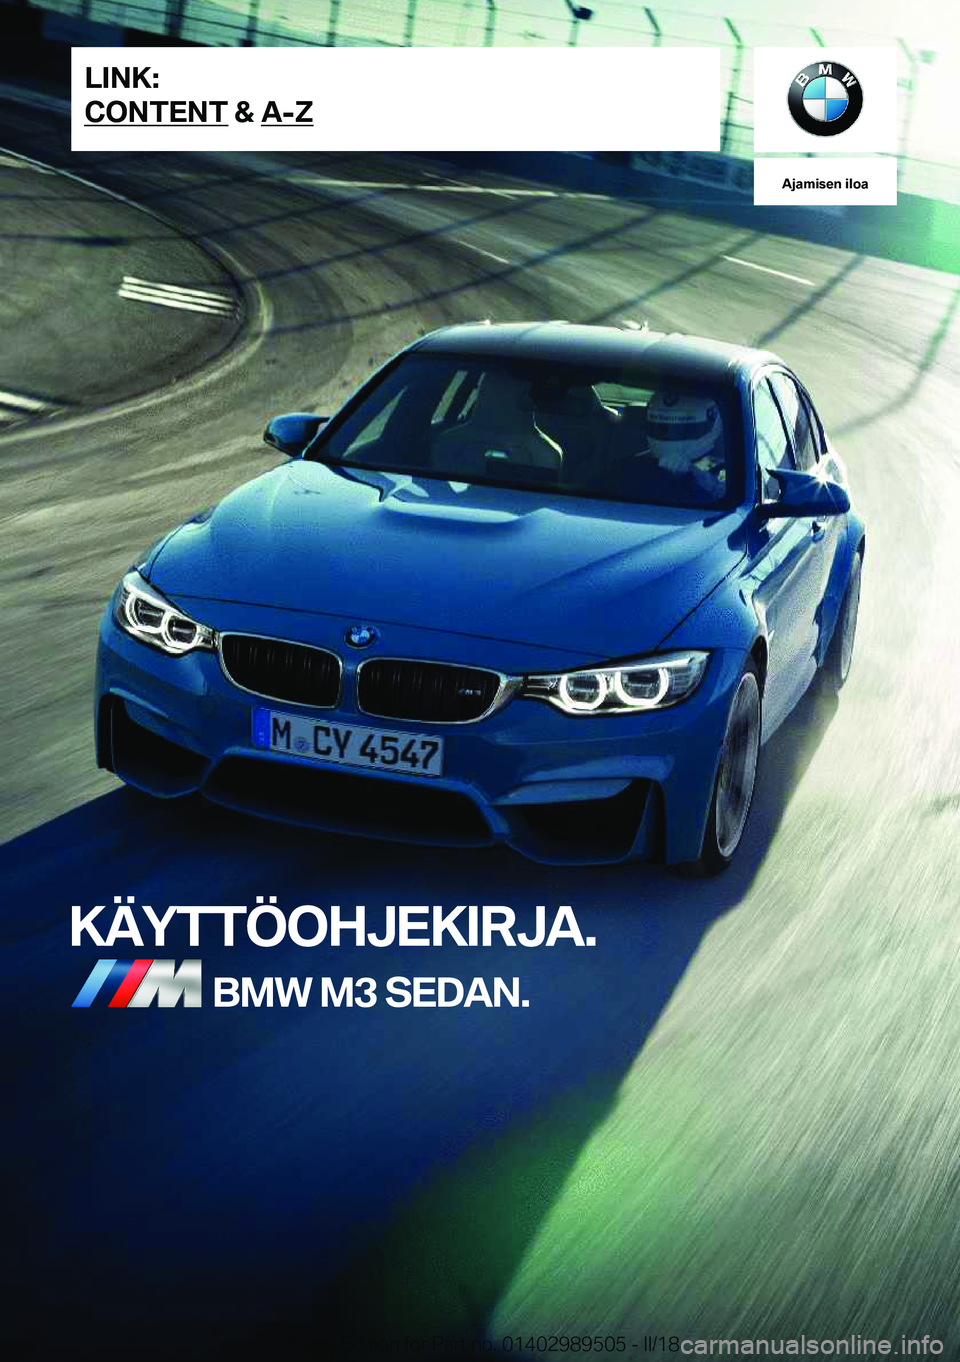 BMW M3 2018  Omistajan Käsikirja (in Finnish) �A�j�a�m�i�s�e�n��i�l�o�a
�K�